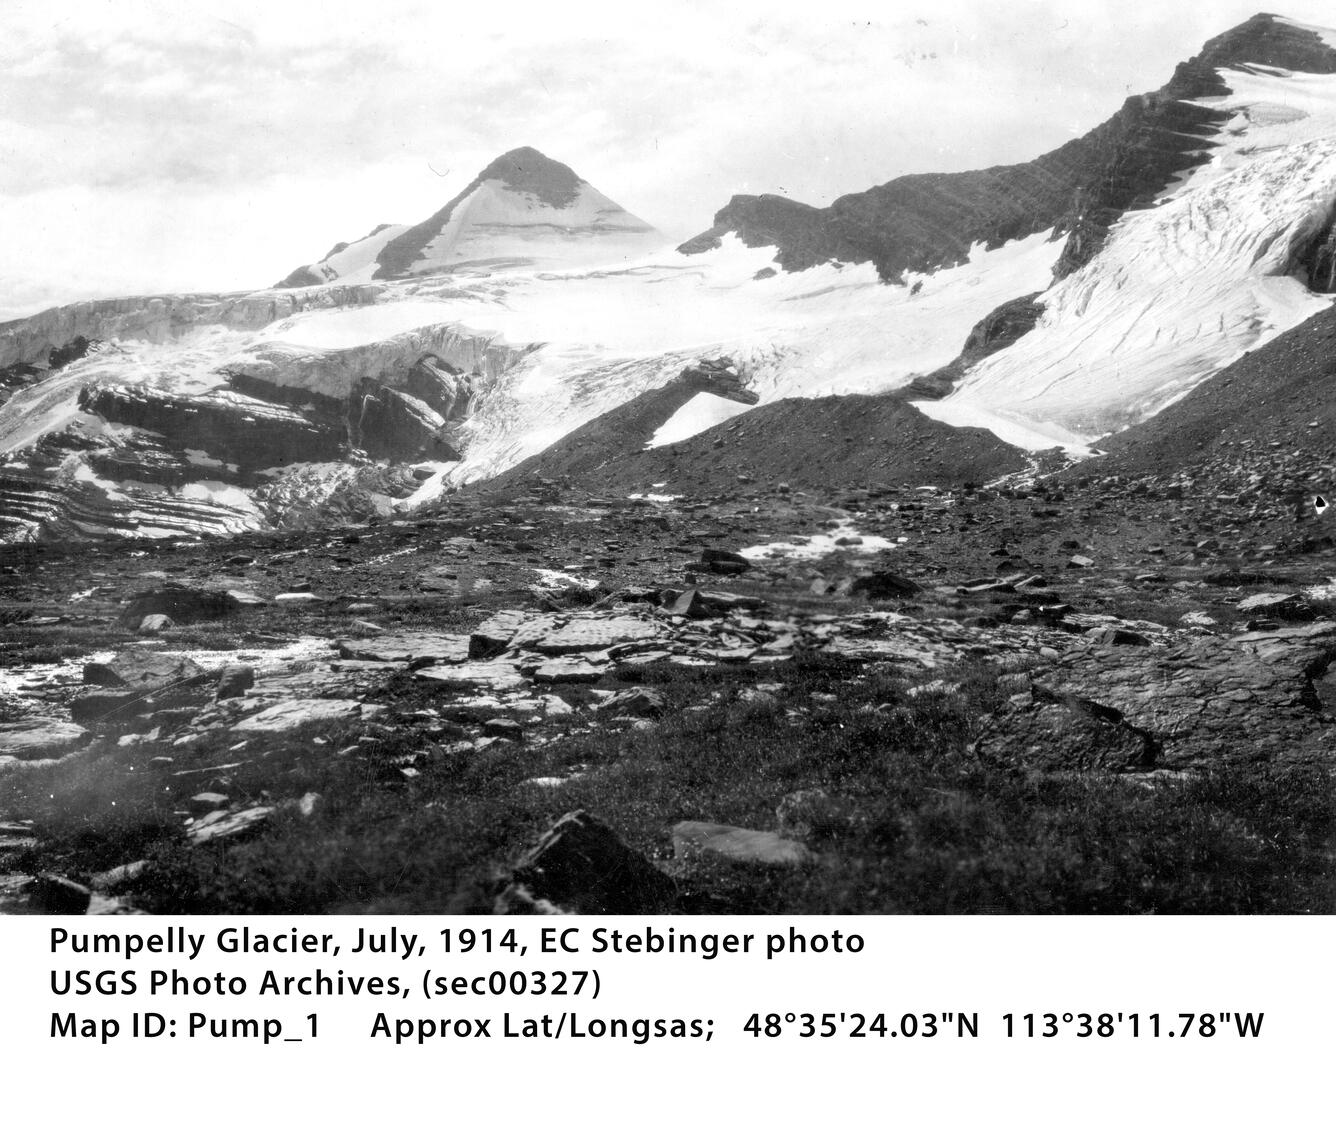 Pumpelly Glacier in Glacier National park circa 1914, Image 1 of 3